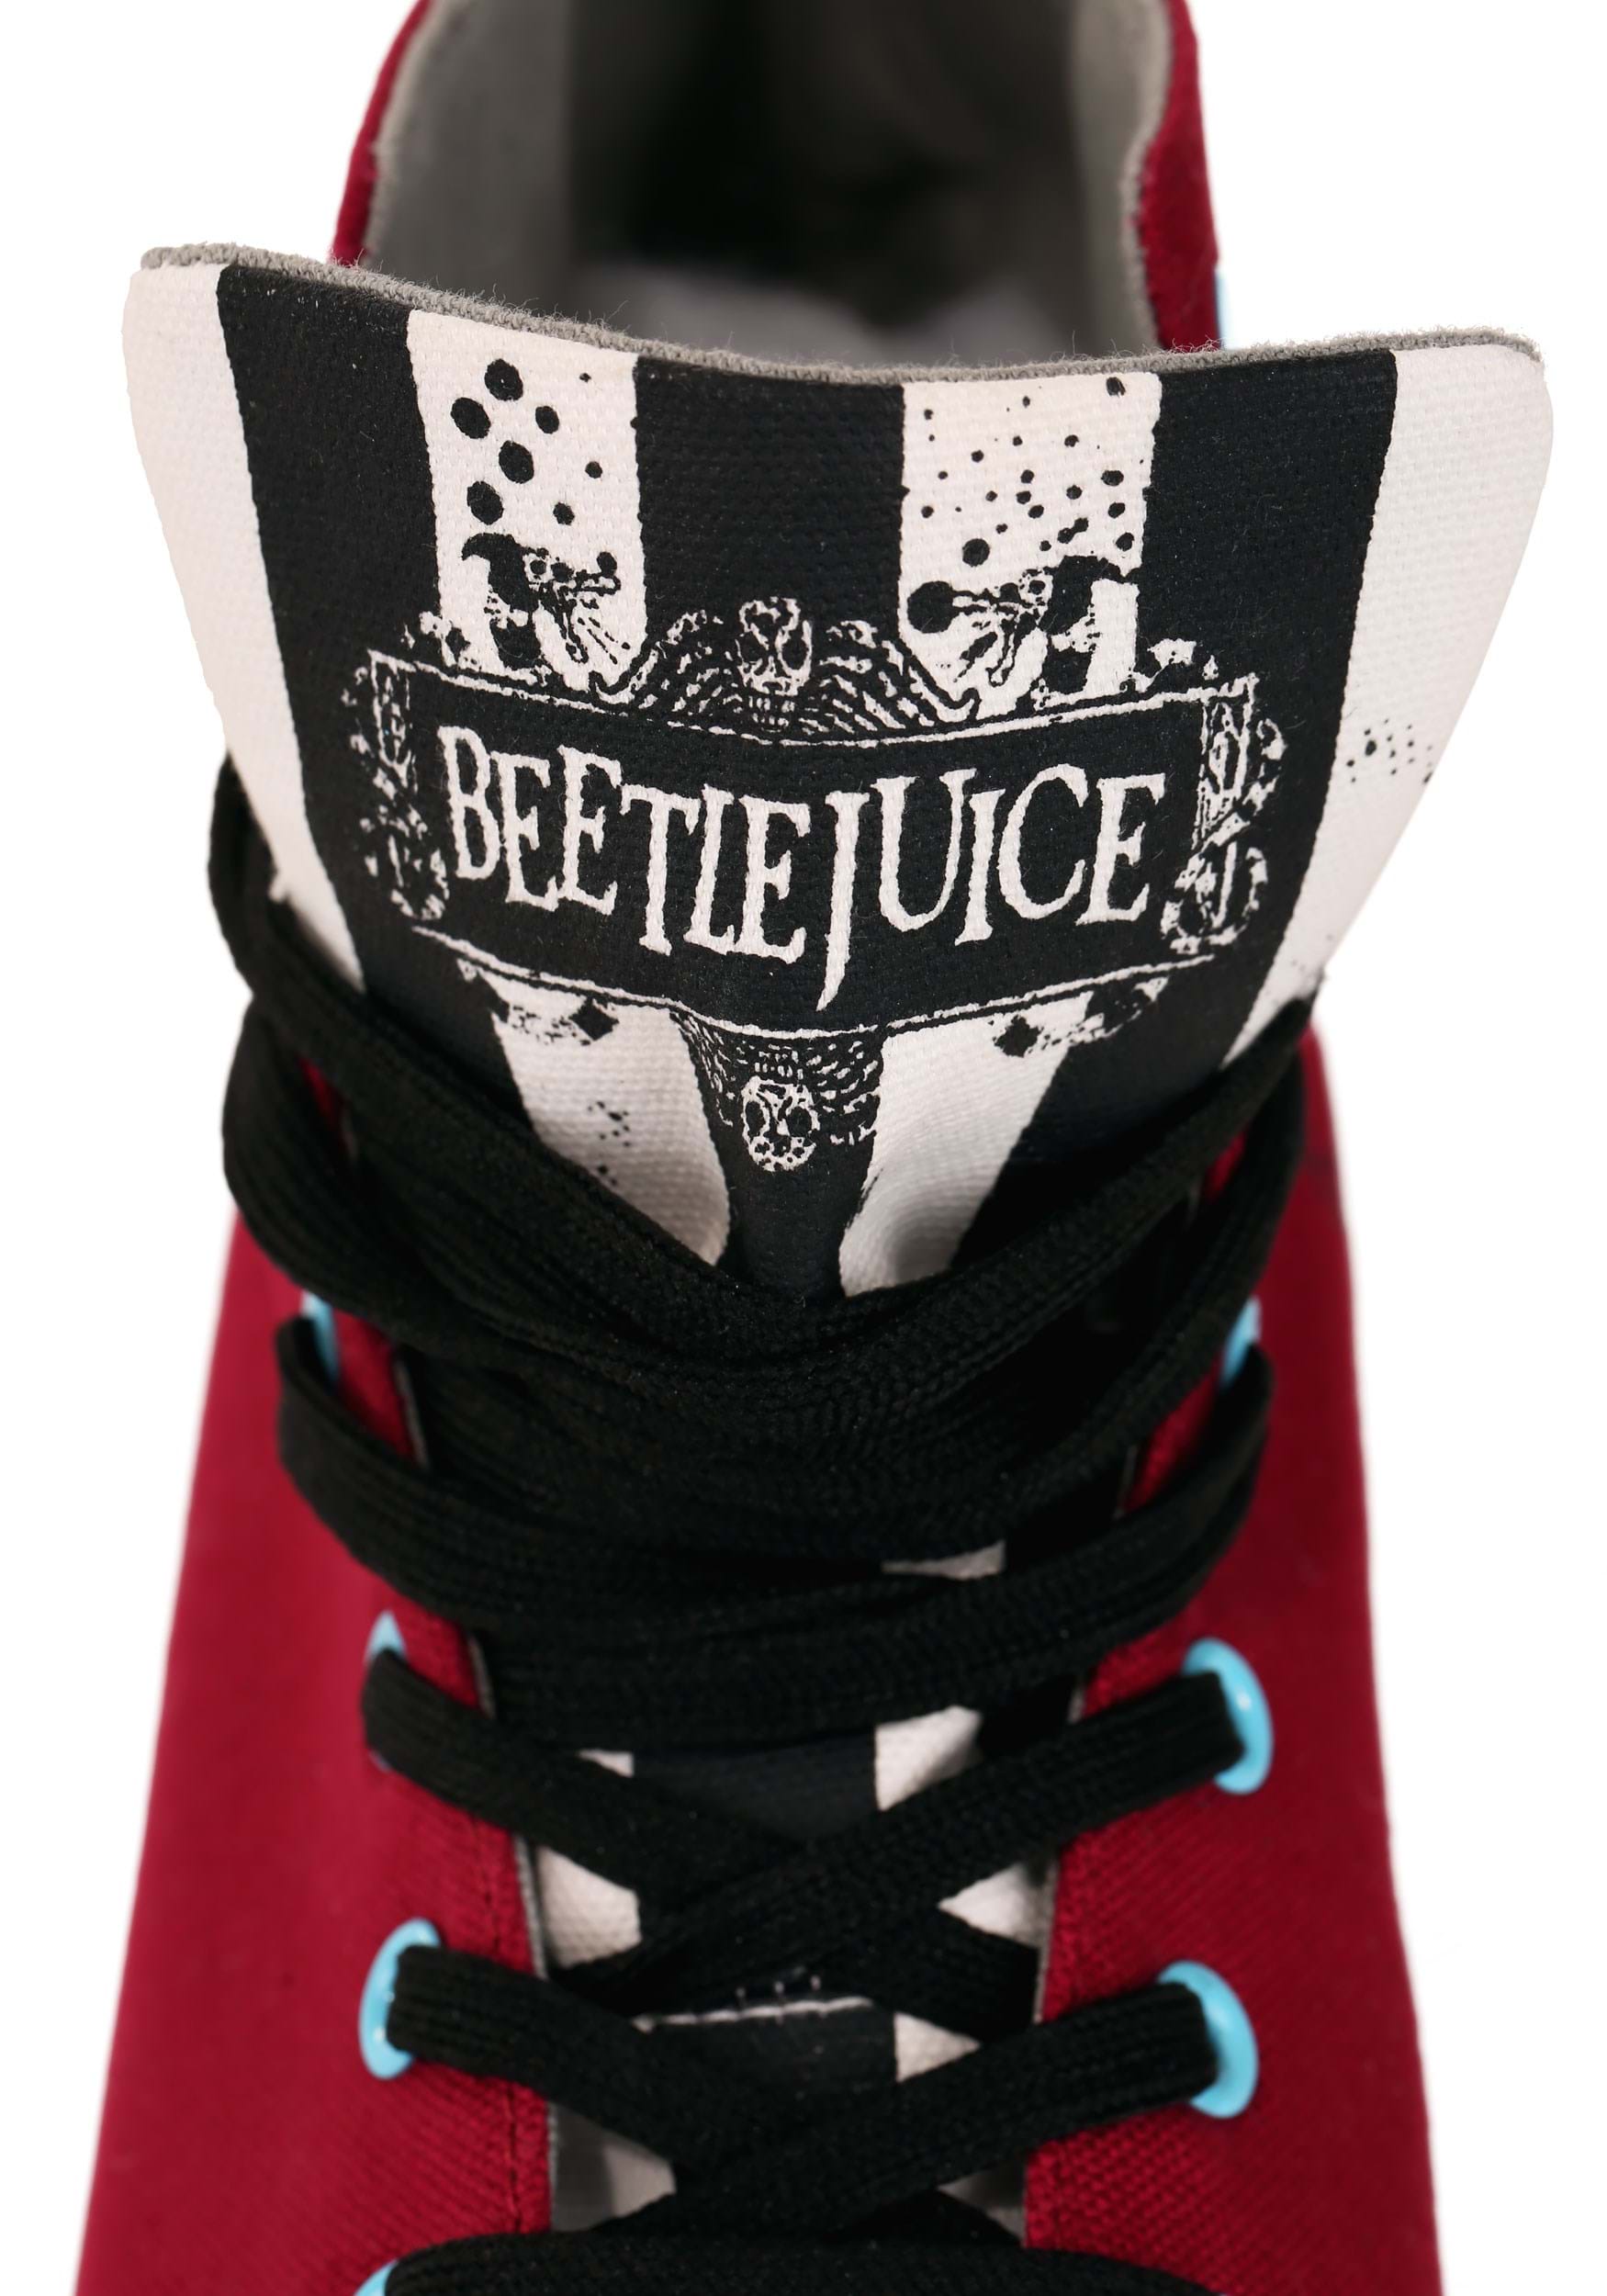 Beetlejuice Recently Deceased Maroon Sneakers For Adults